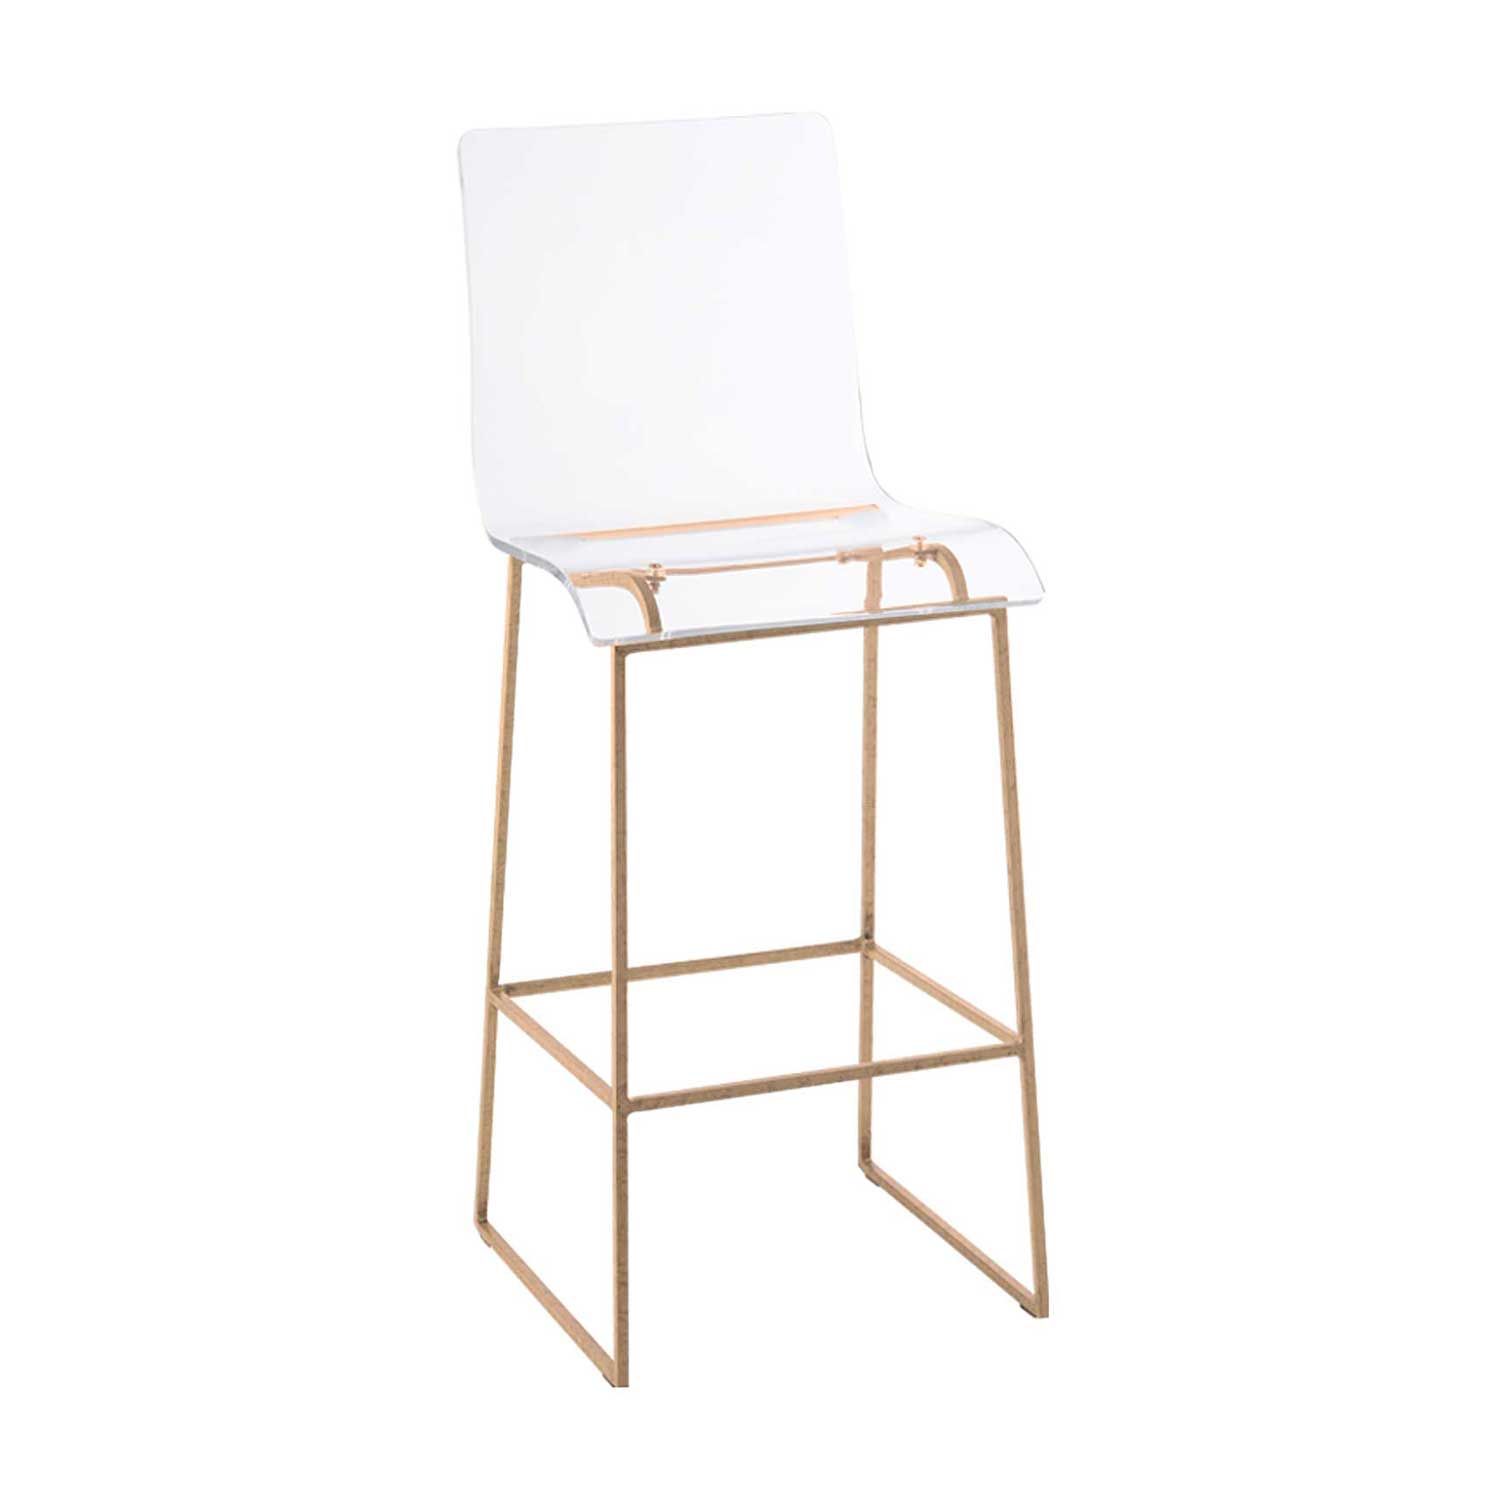 king bar stool – gold thumbnail image